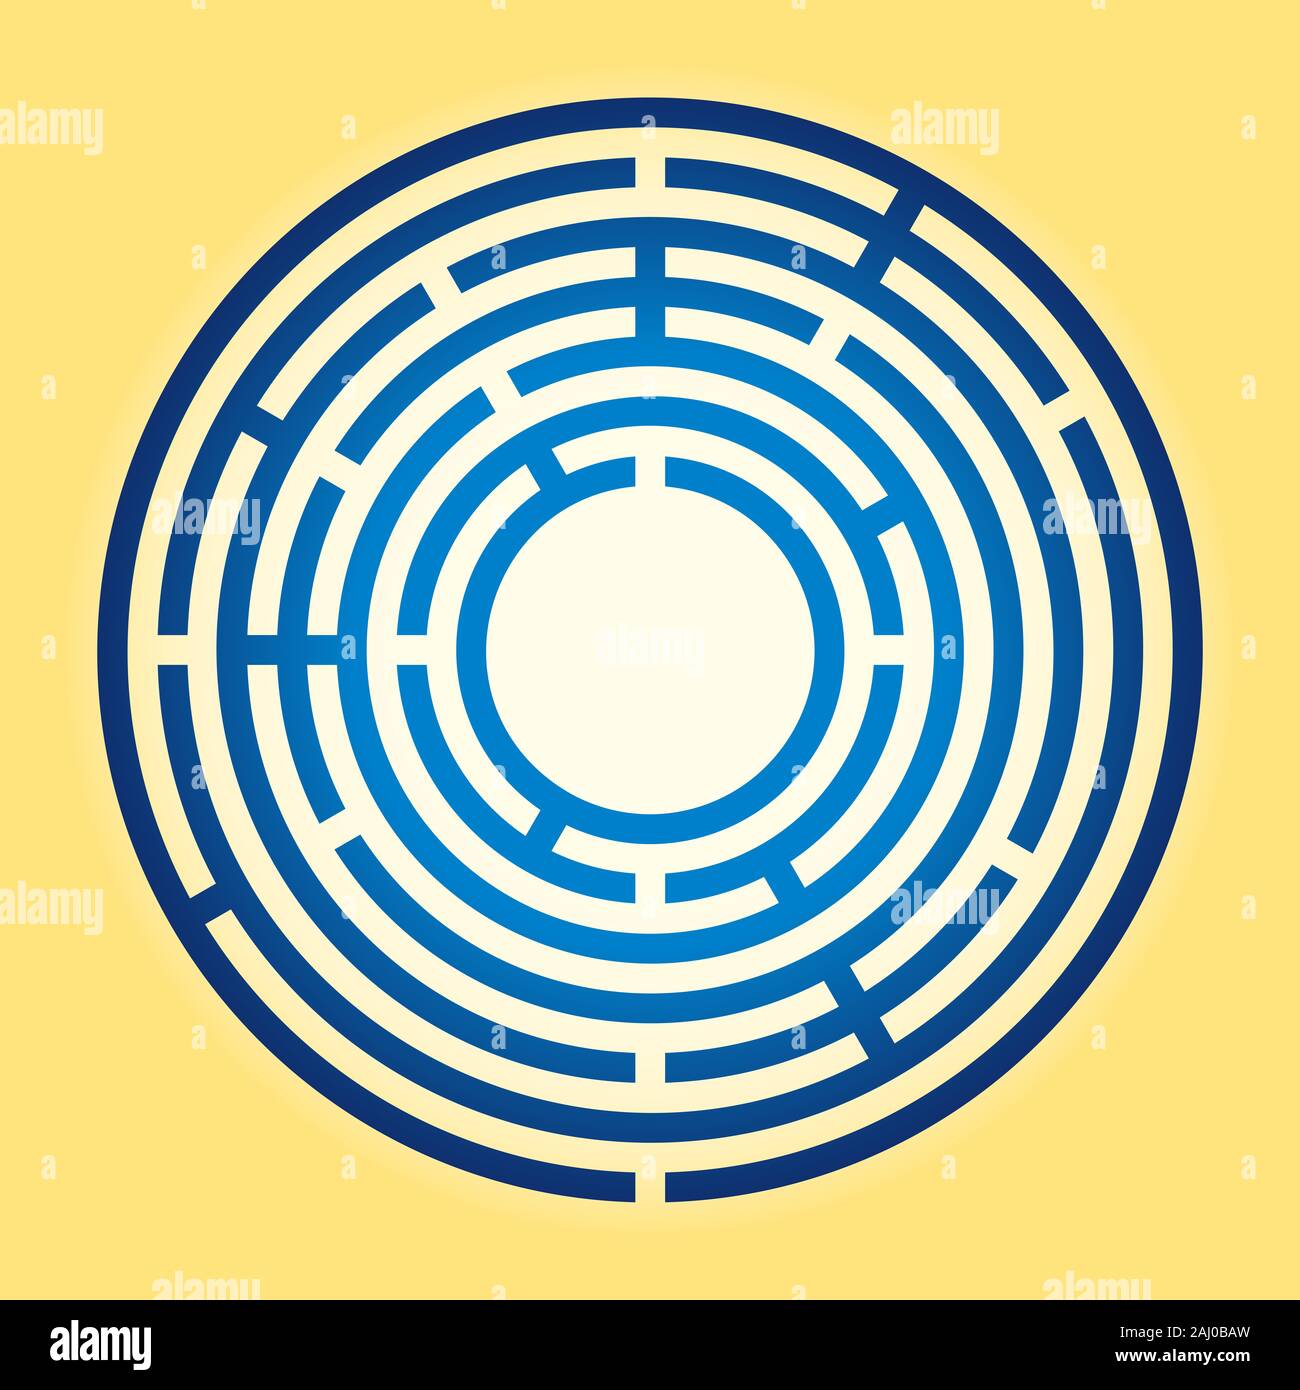 Petit labyrinthe circulaire de couleur. Labyrinthe radial bleu sur fond jaune. Trouver un itinéraire vers le centre, suivez le chemin de l'entrée de l'objectif. Banque D'Images